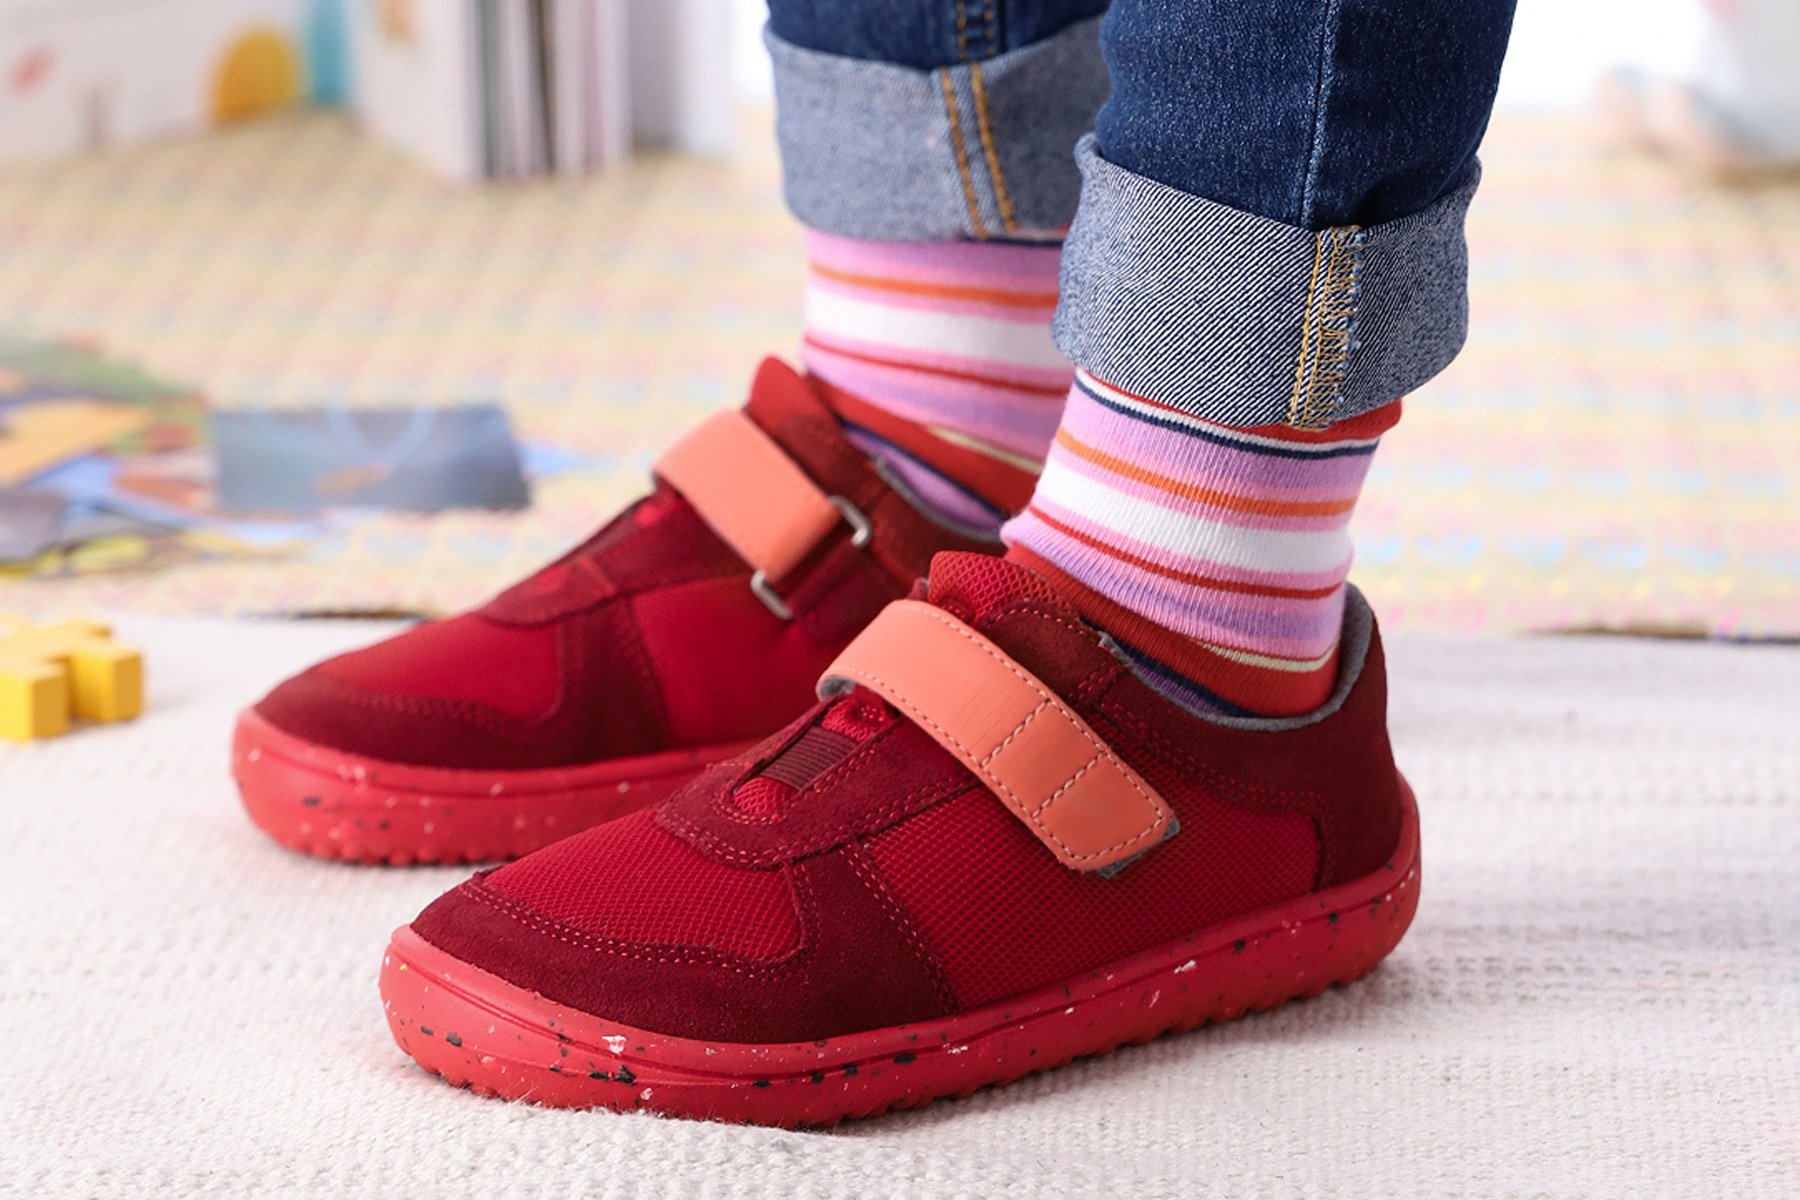 Zapatos Plantillas y accesorios Cuidado y limpieza del calzado Protección garantizada del calzado por V 